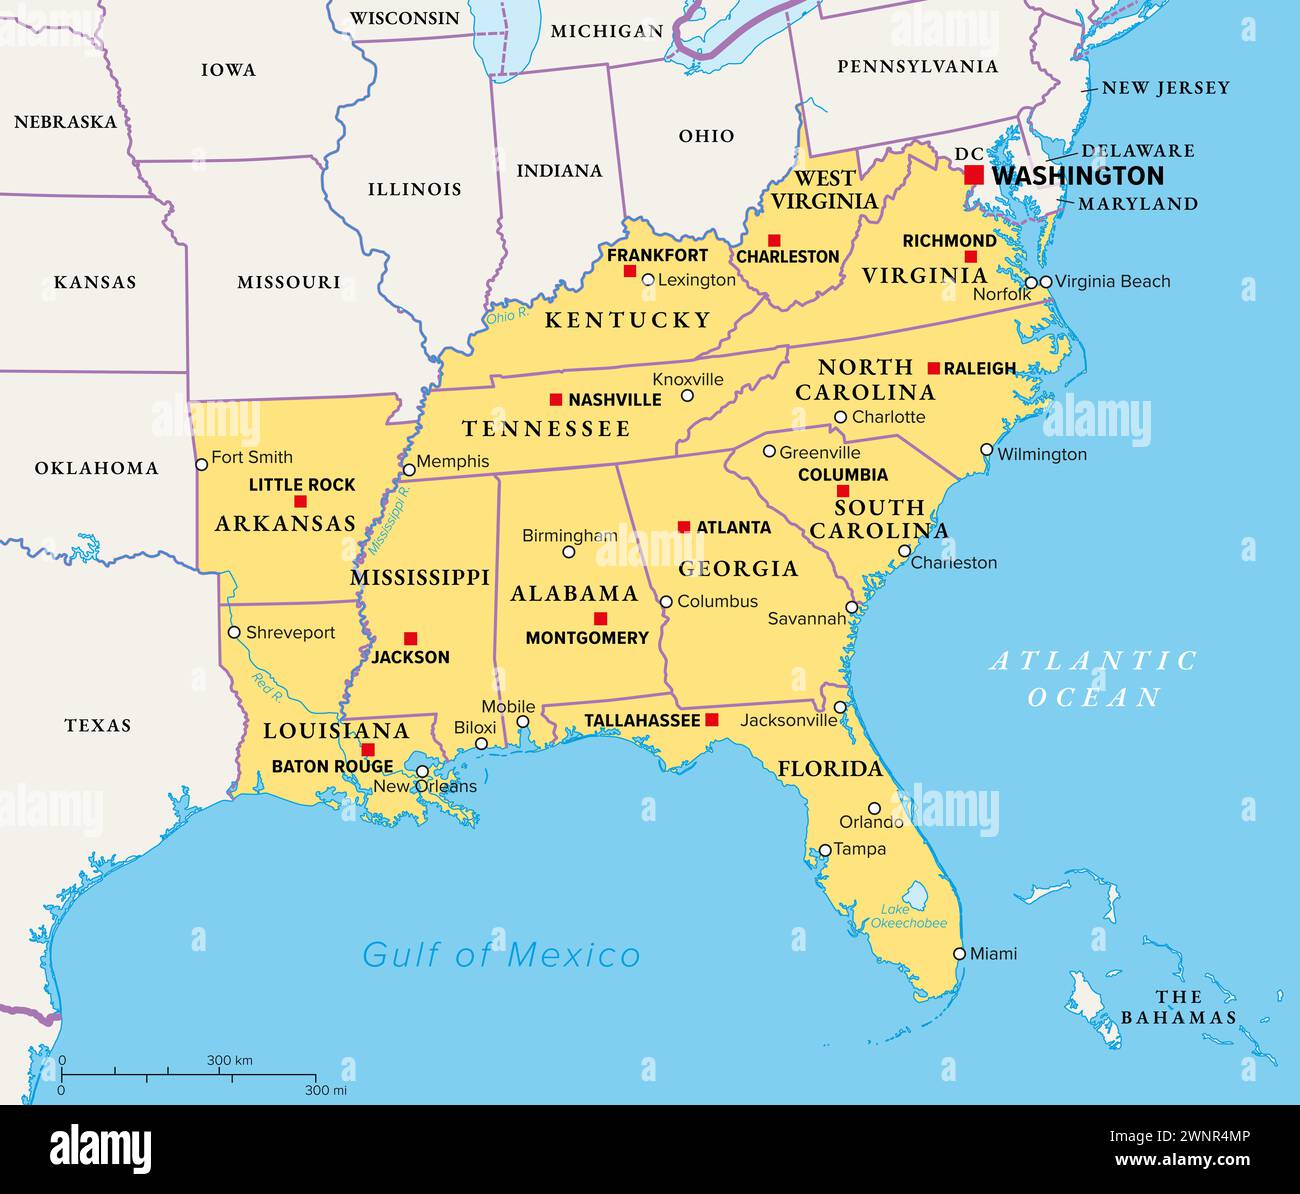 Regione sud-orientale, il sud degli Stati Uniti, mappa politica. Regione geografica e culturale, nota anche come Stati Uniti meridionali. Foto Stock